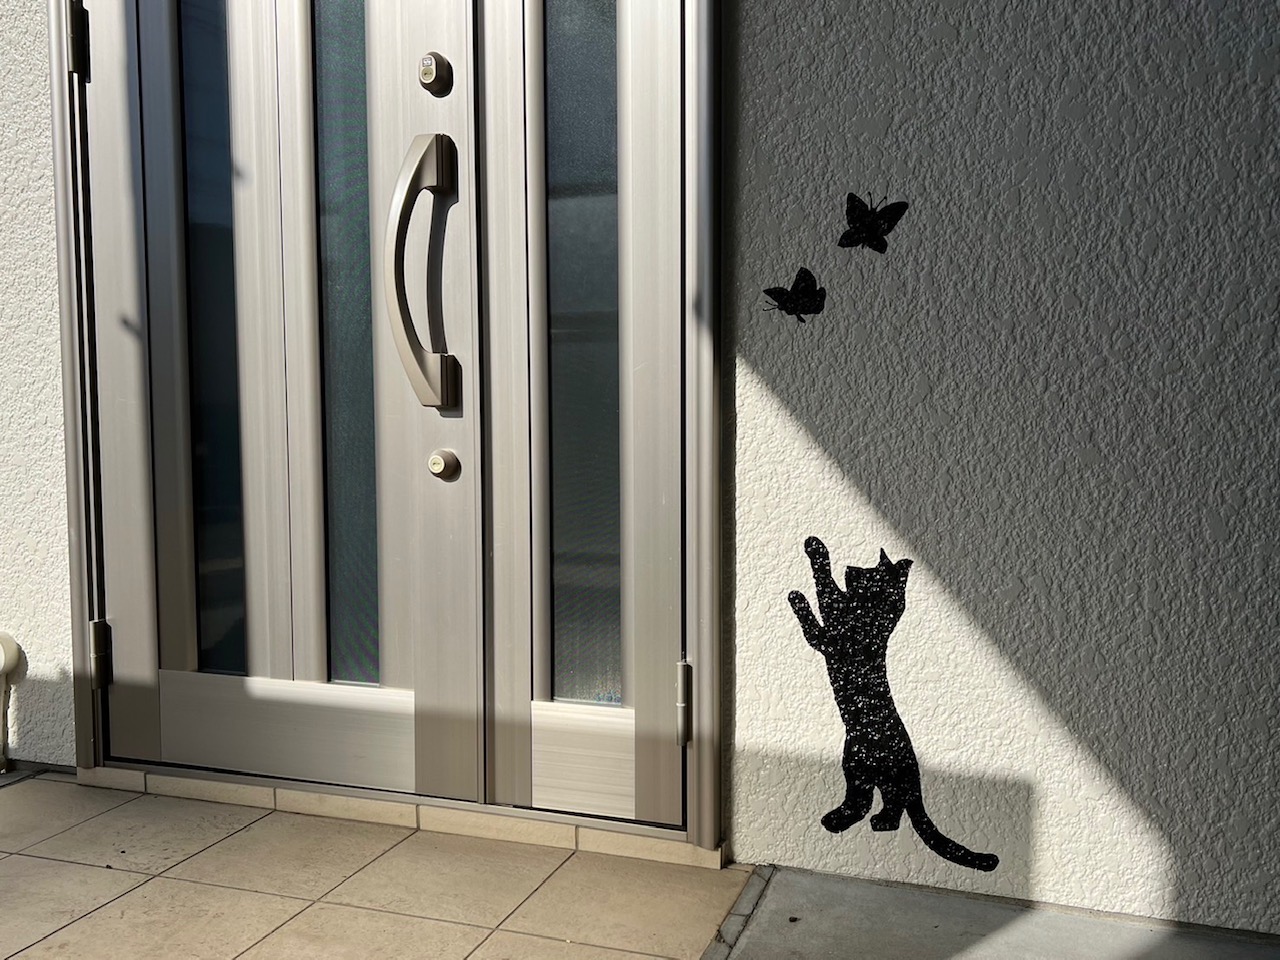 猫が蝶に触ろうとしているアート塗装を遠くから見た写真